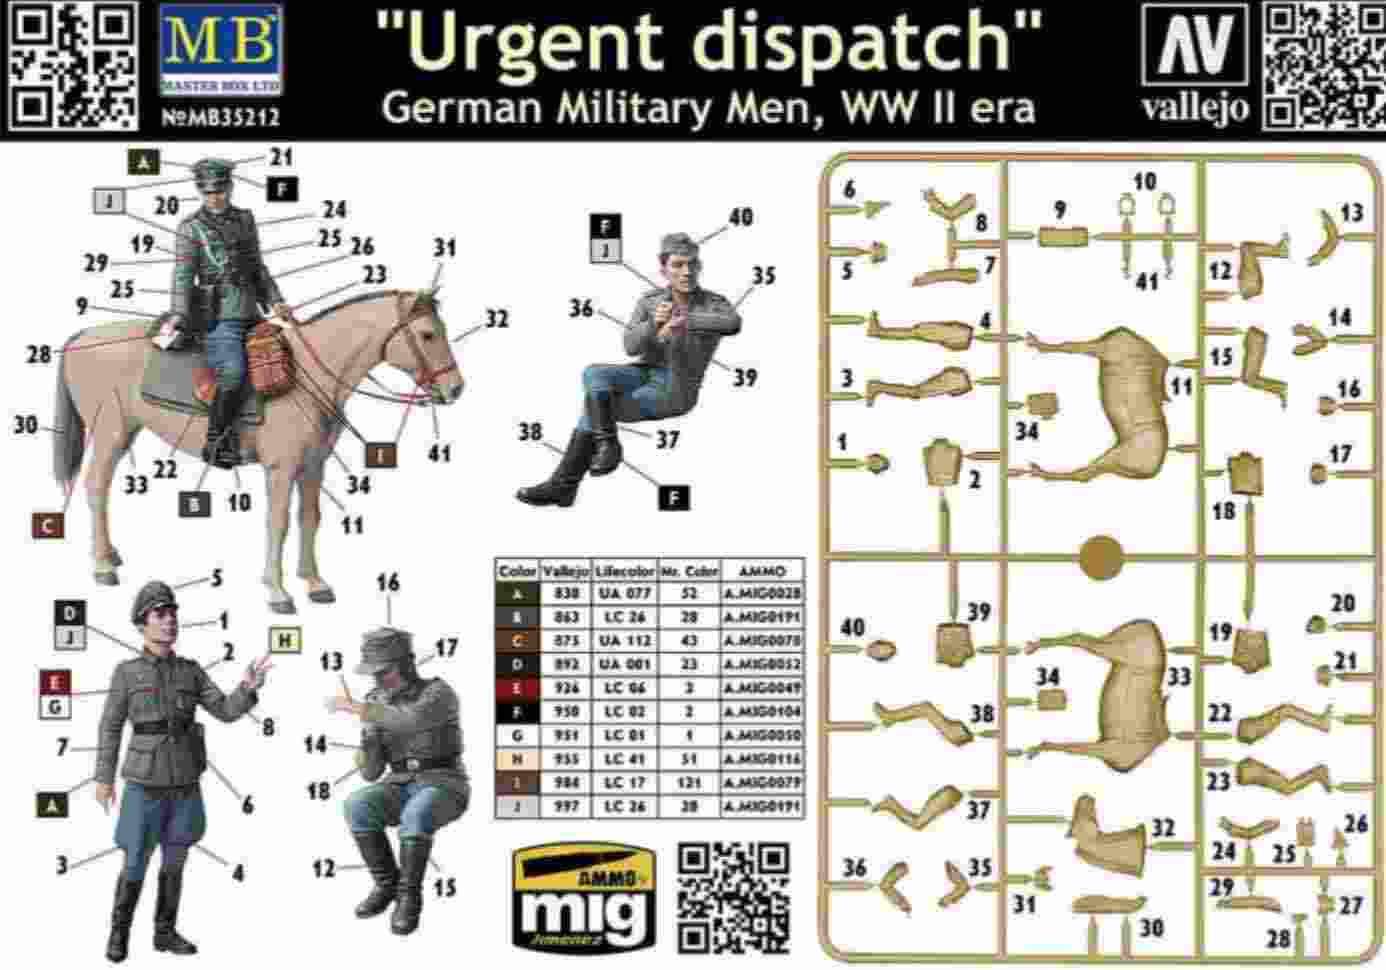 35212-urgent dispatch scheme